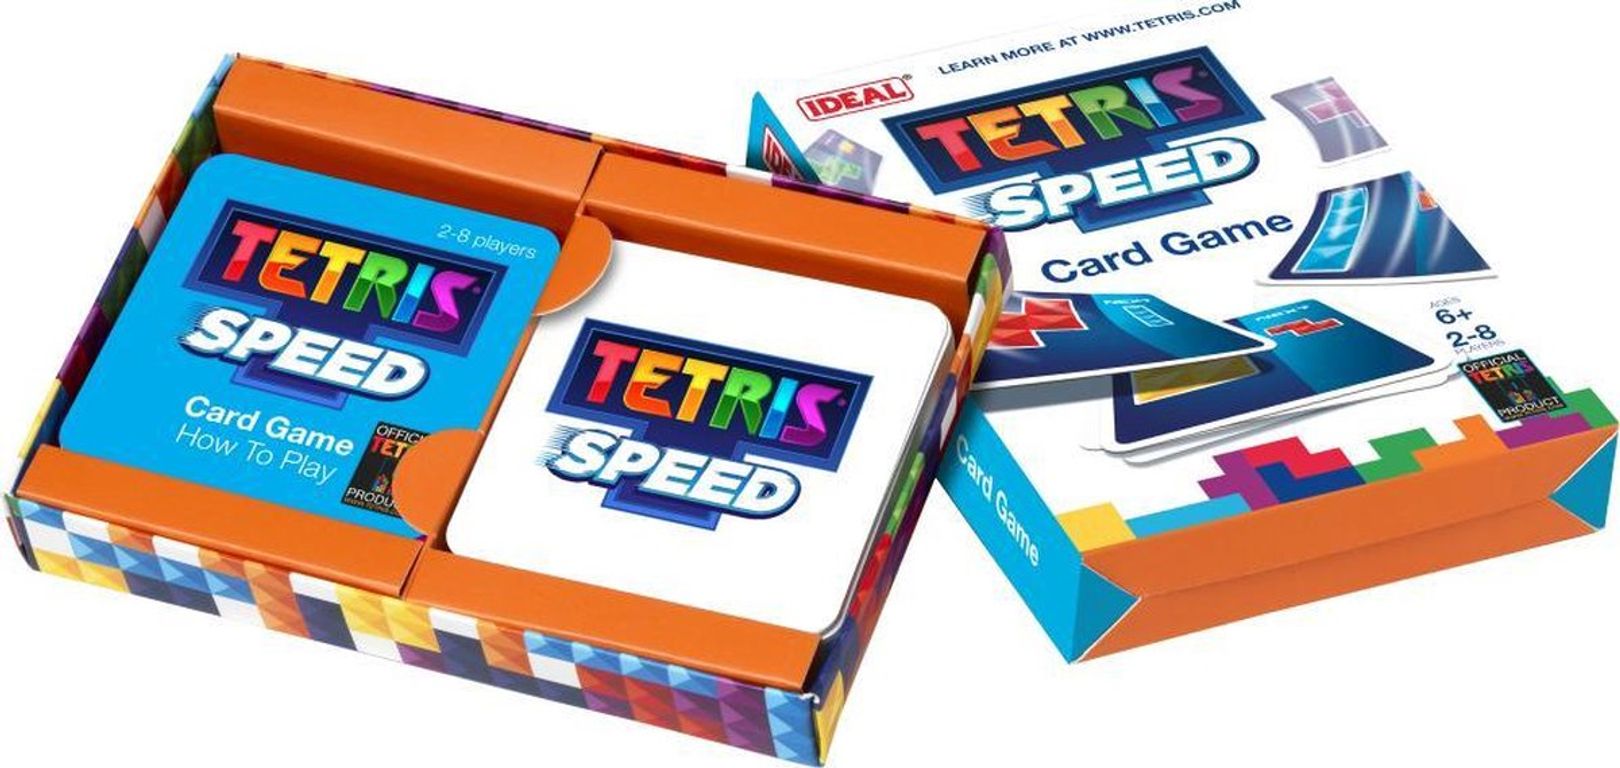 Tetris Speed componenti